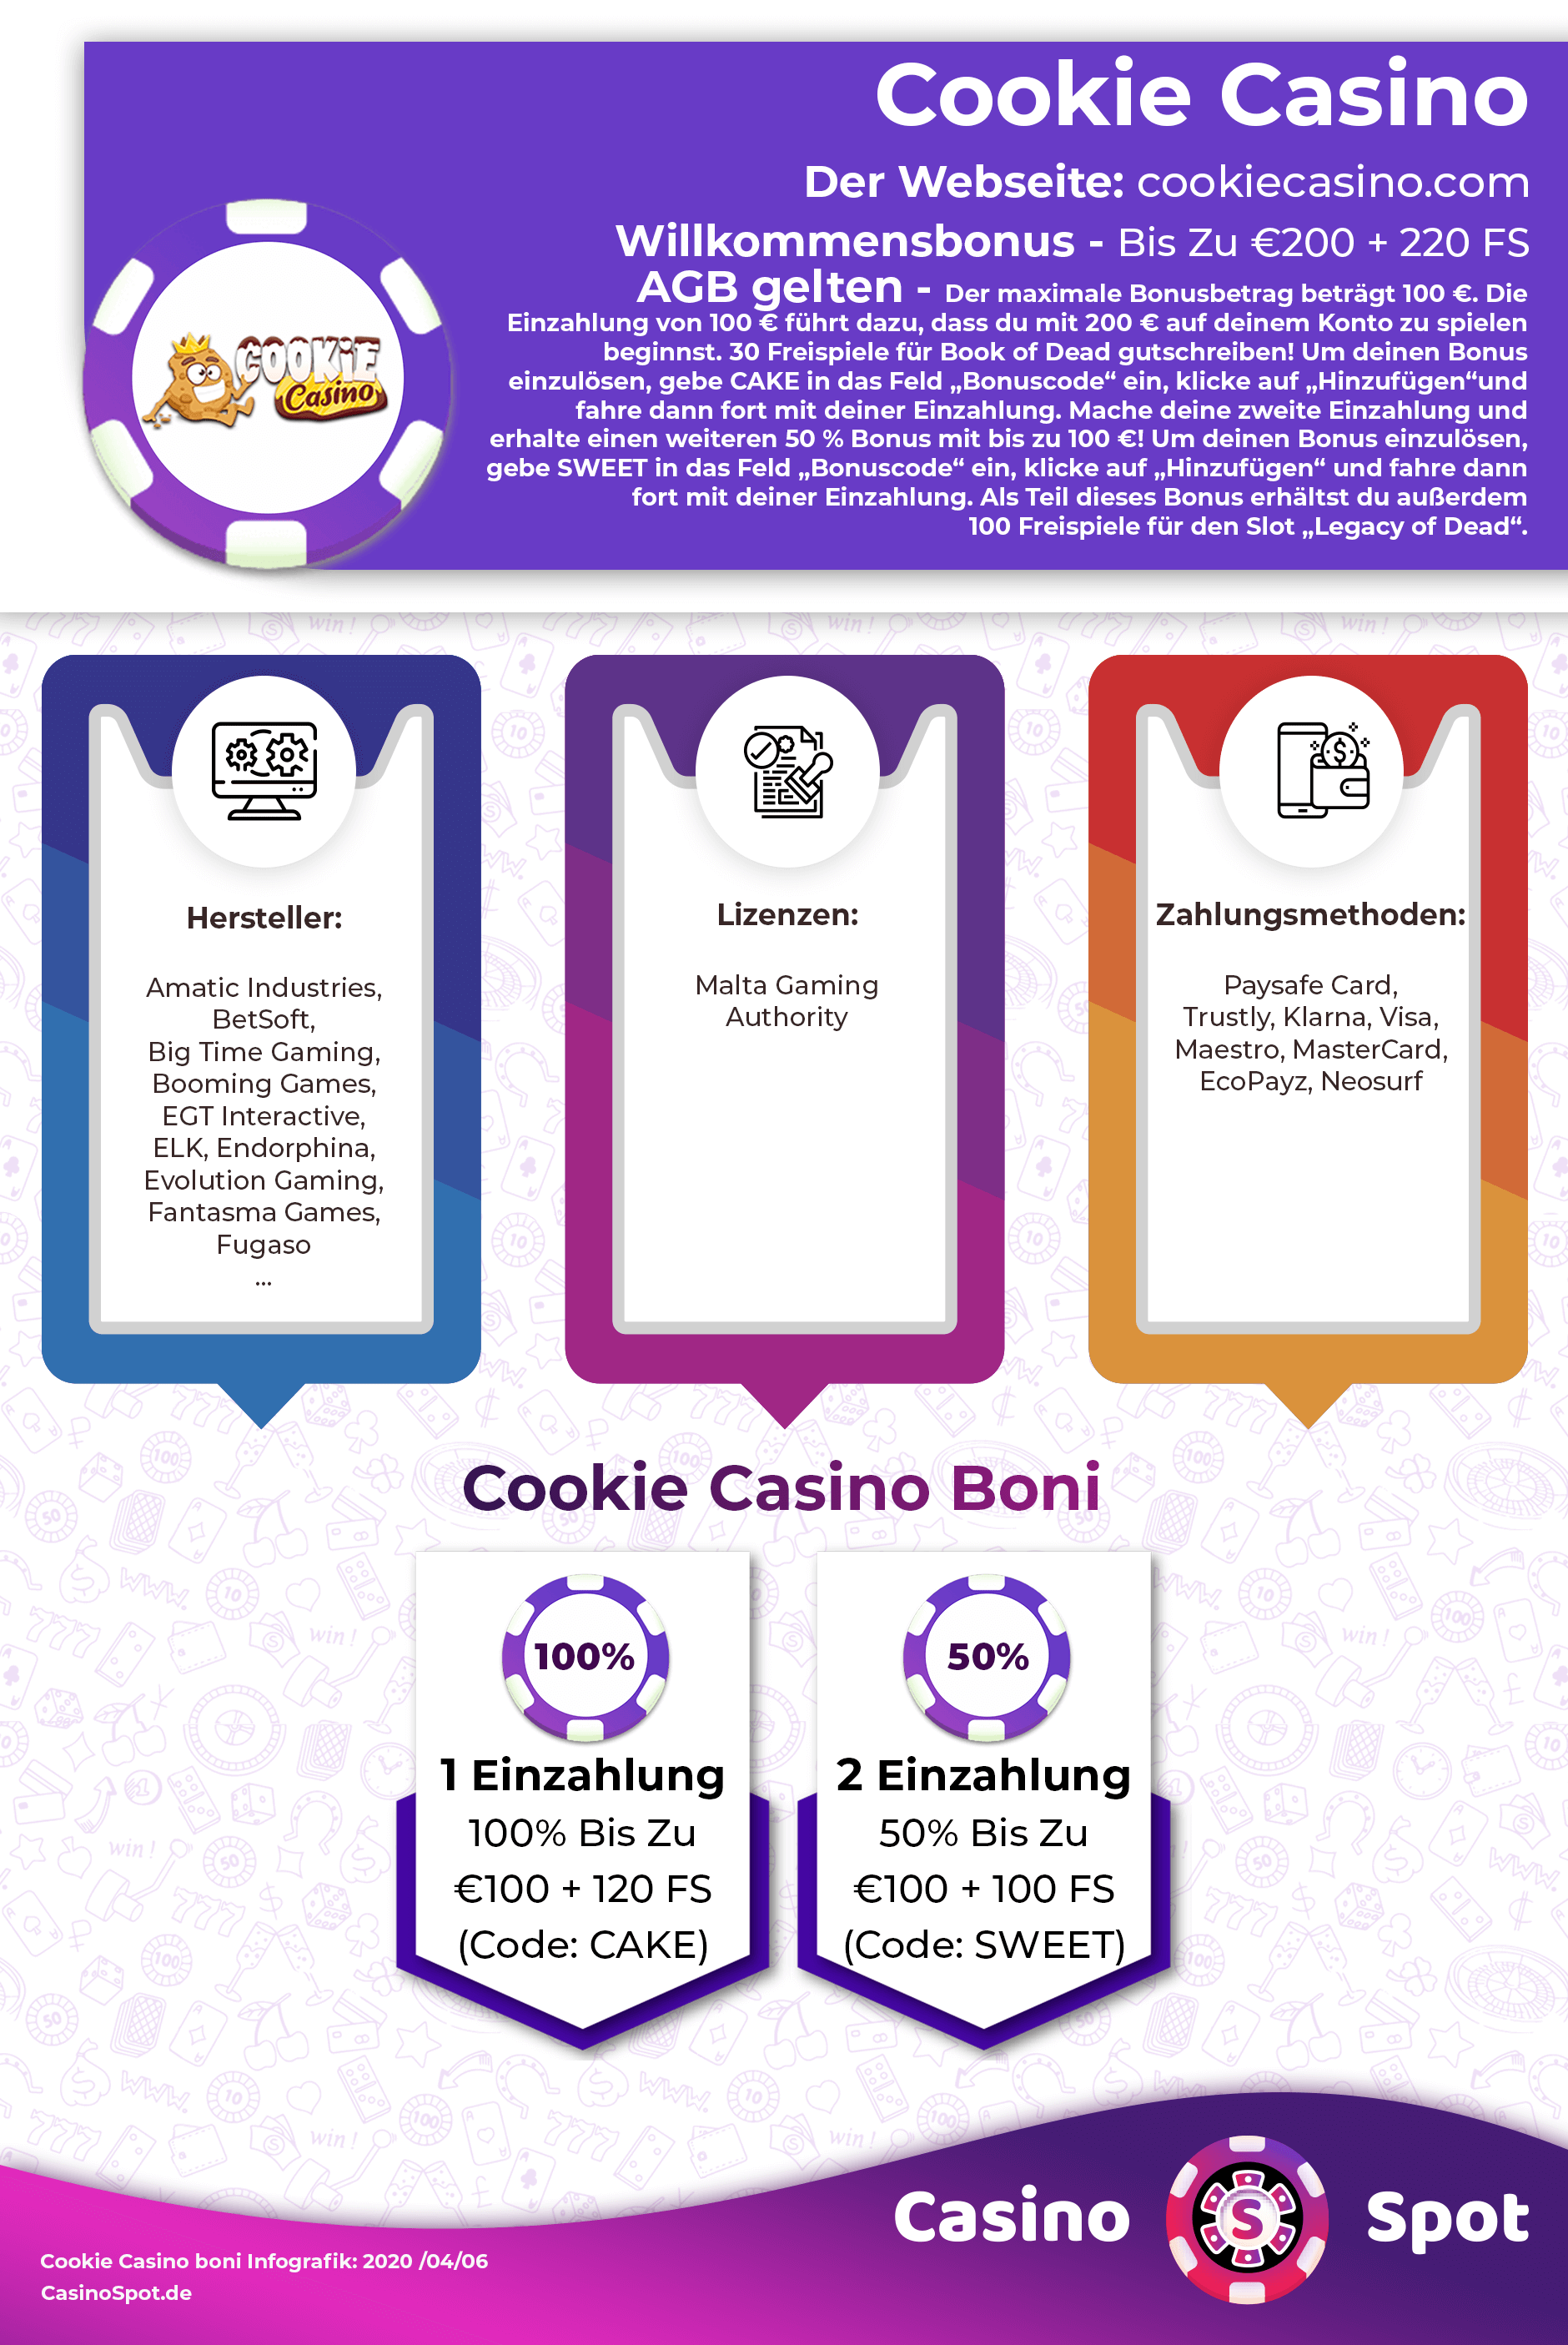 cookie casino no deposit bonus code 2021